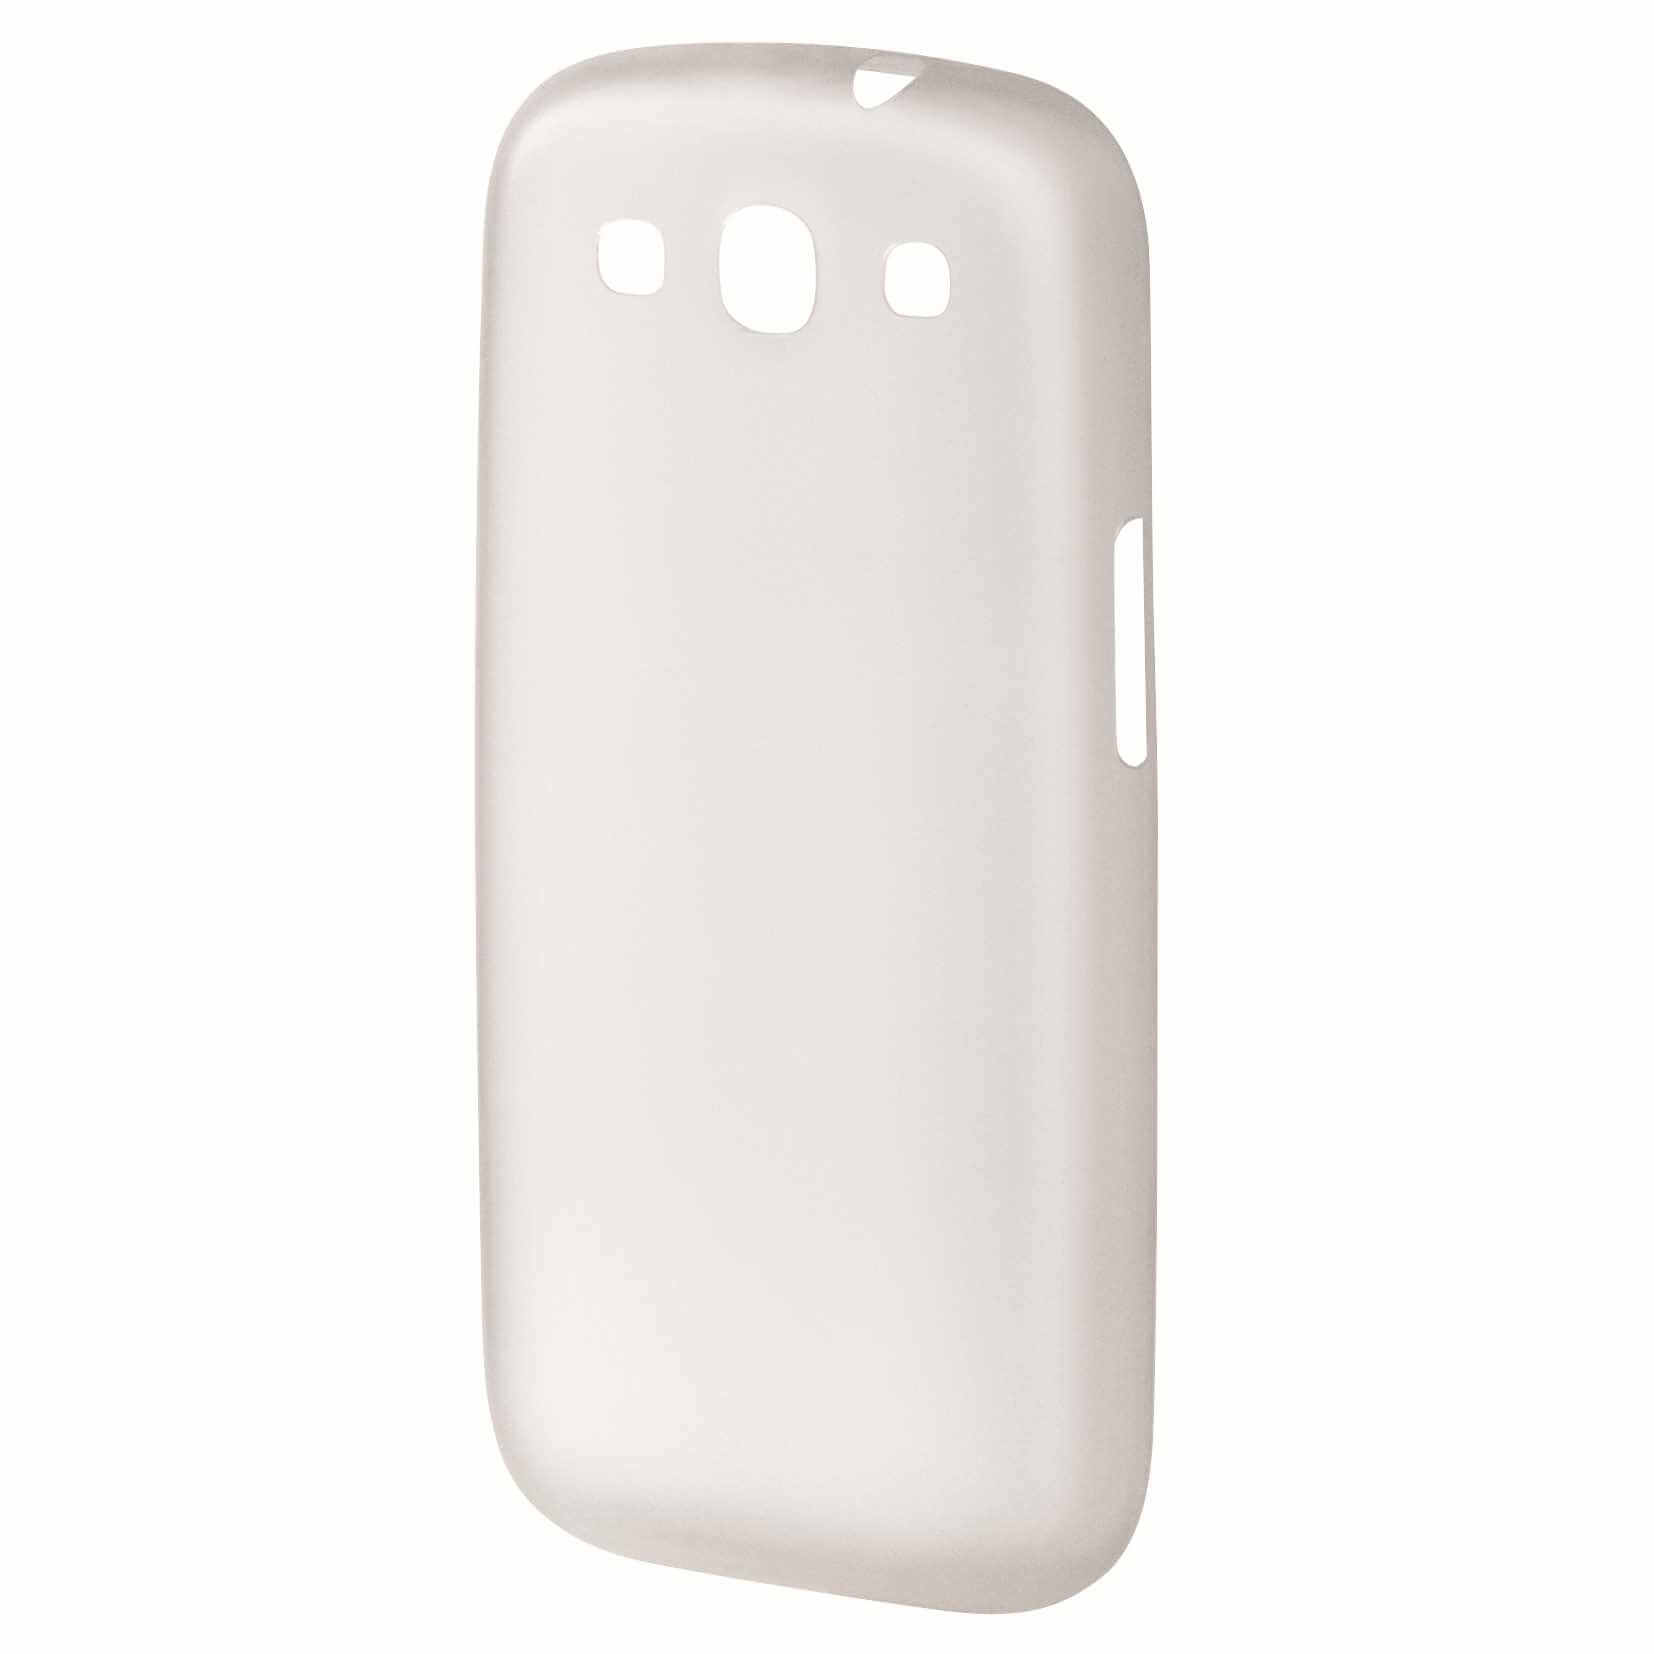  Capac de protectie HAMA Slim 108468 pentru Samsung Galaxy S3, Alb 